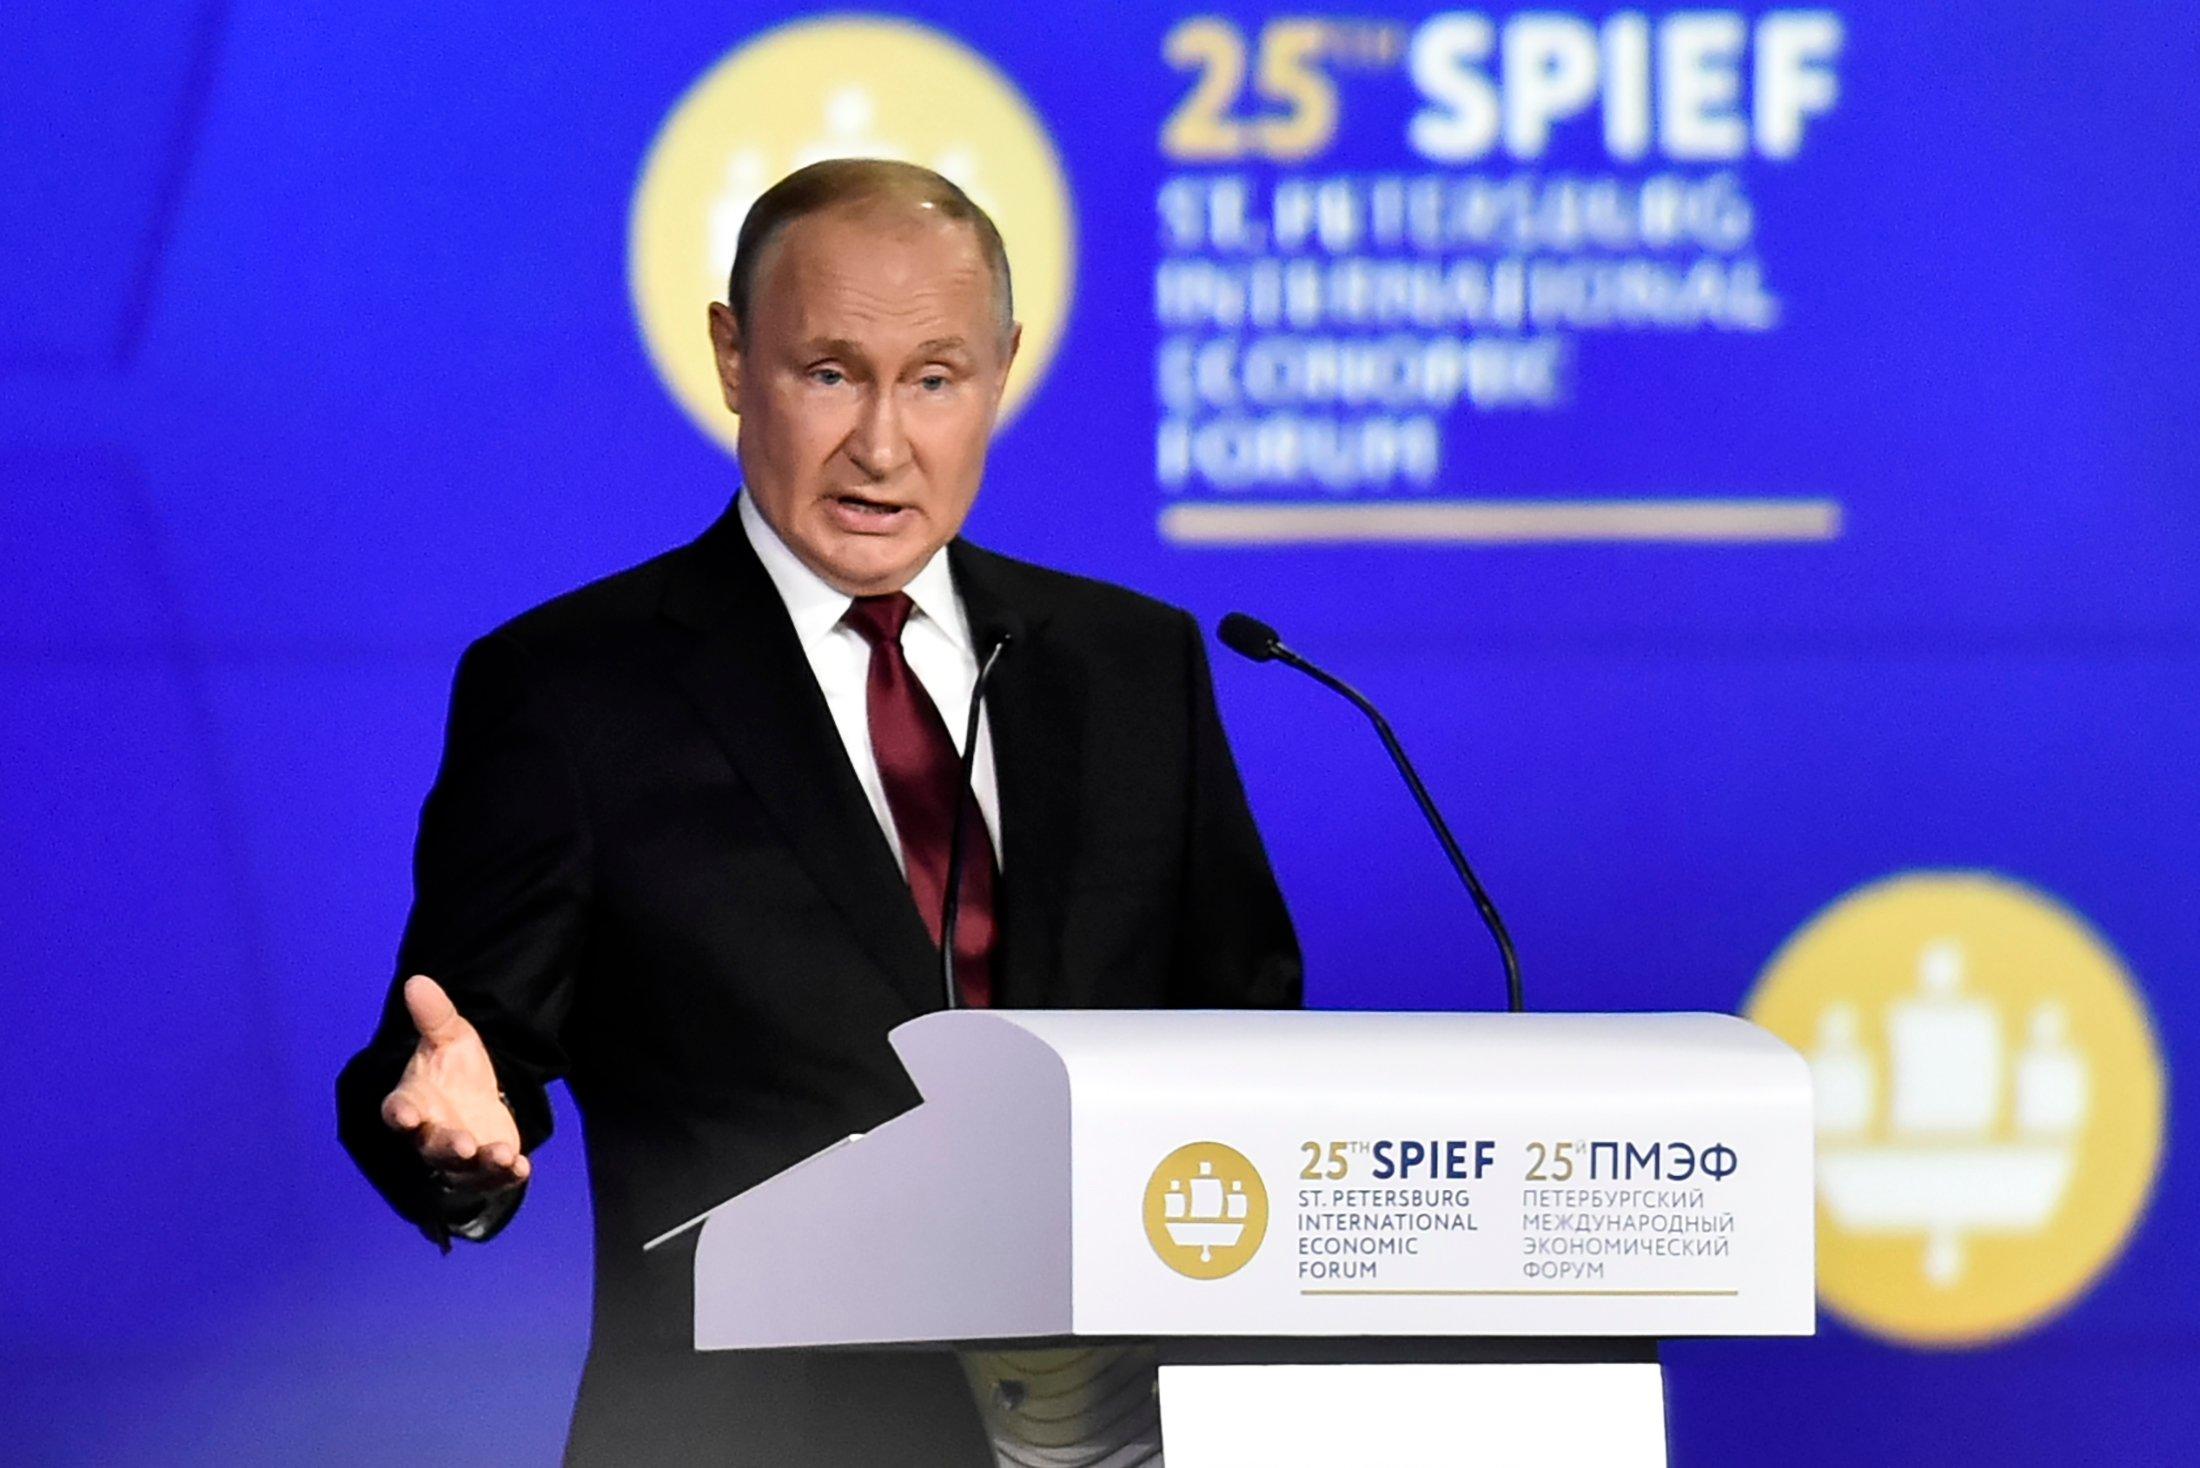 Putin przy mównicy (z aurelą z symbolu wyświetlanego w tle)